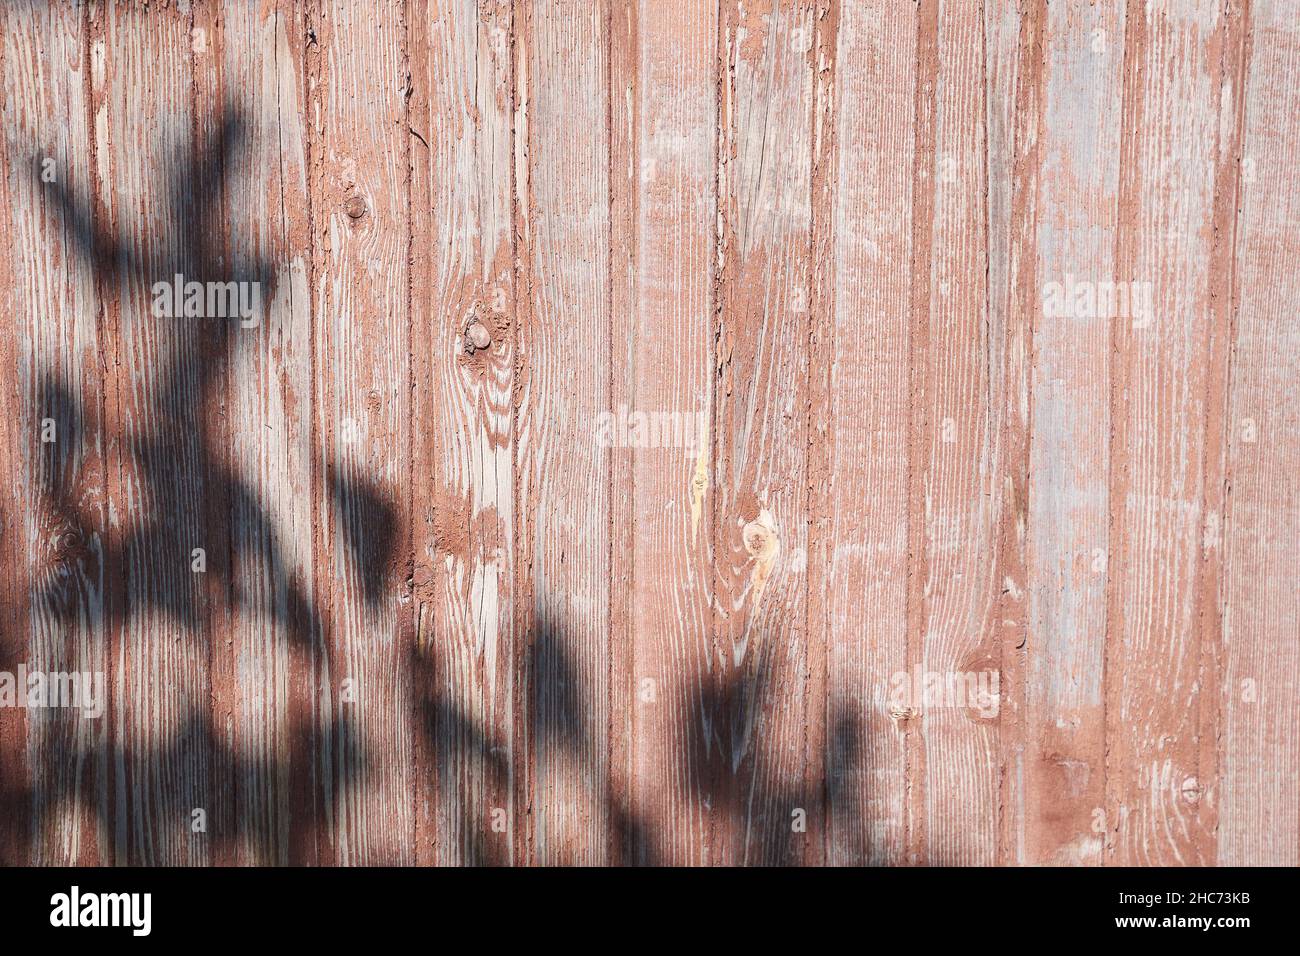 L'ombra scura delle foglie su una recinzione di legno. Sfondo in legno neutro, concetto di natura. Spazio per il testo. Foto di alta qualità Foto Stock